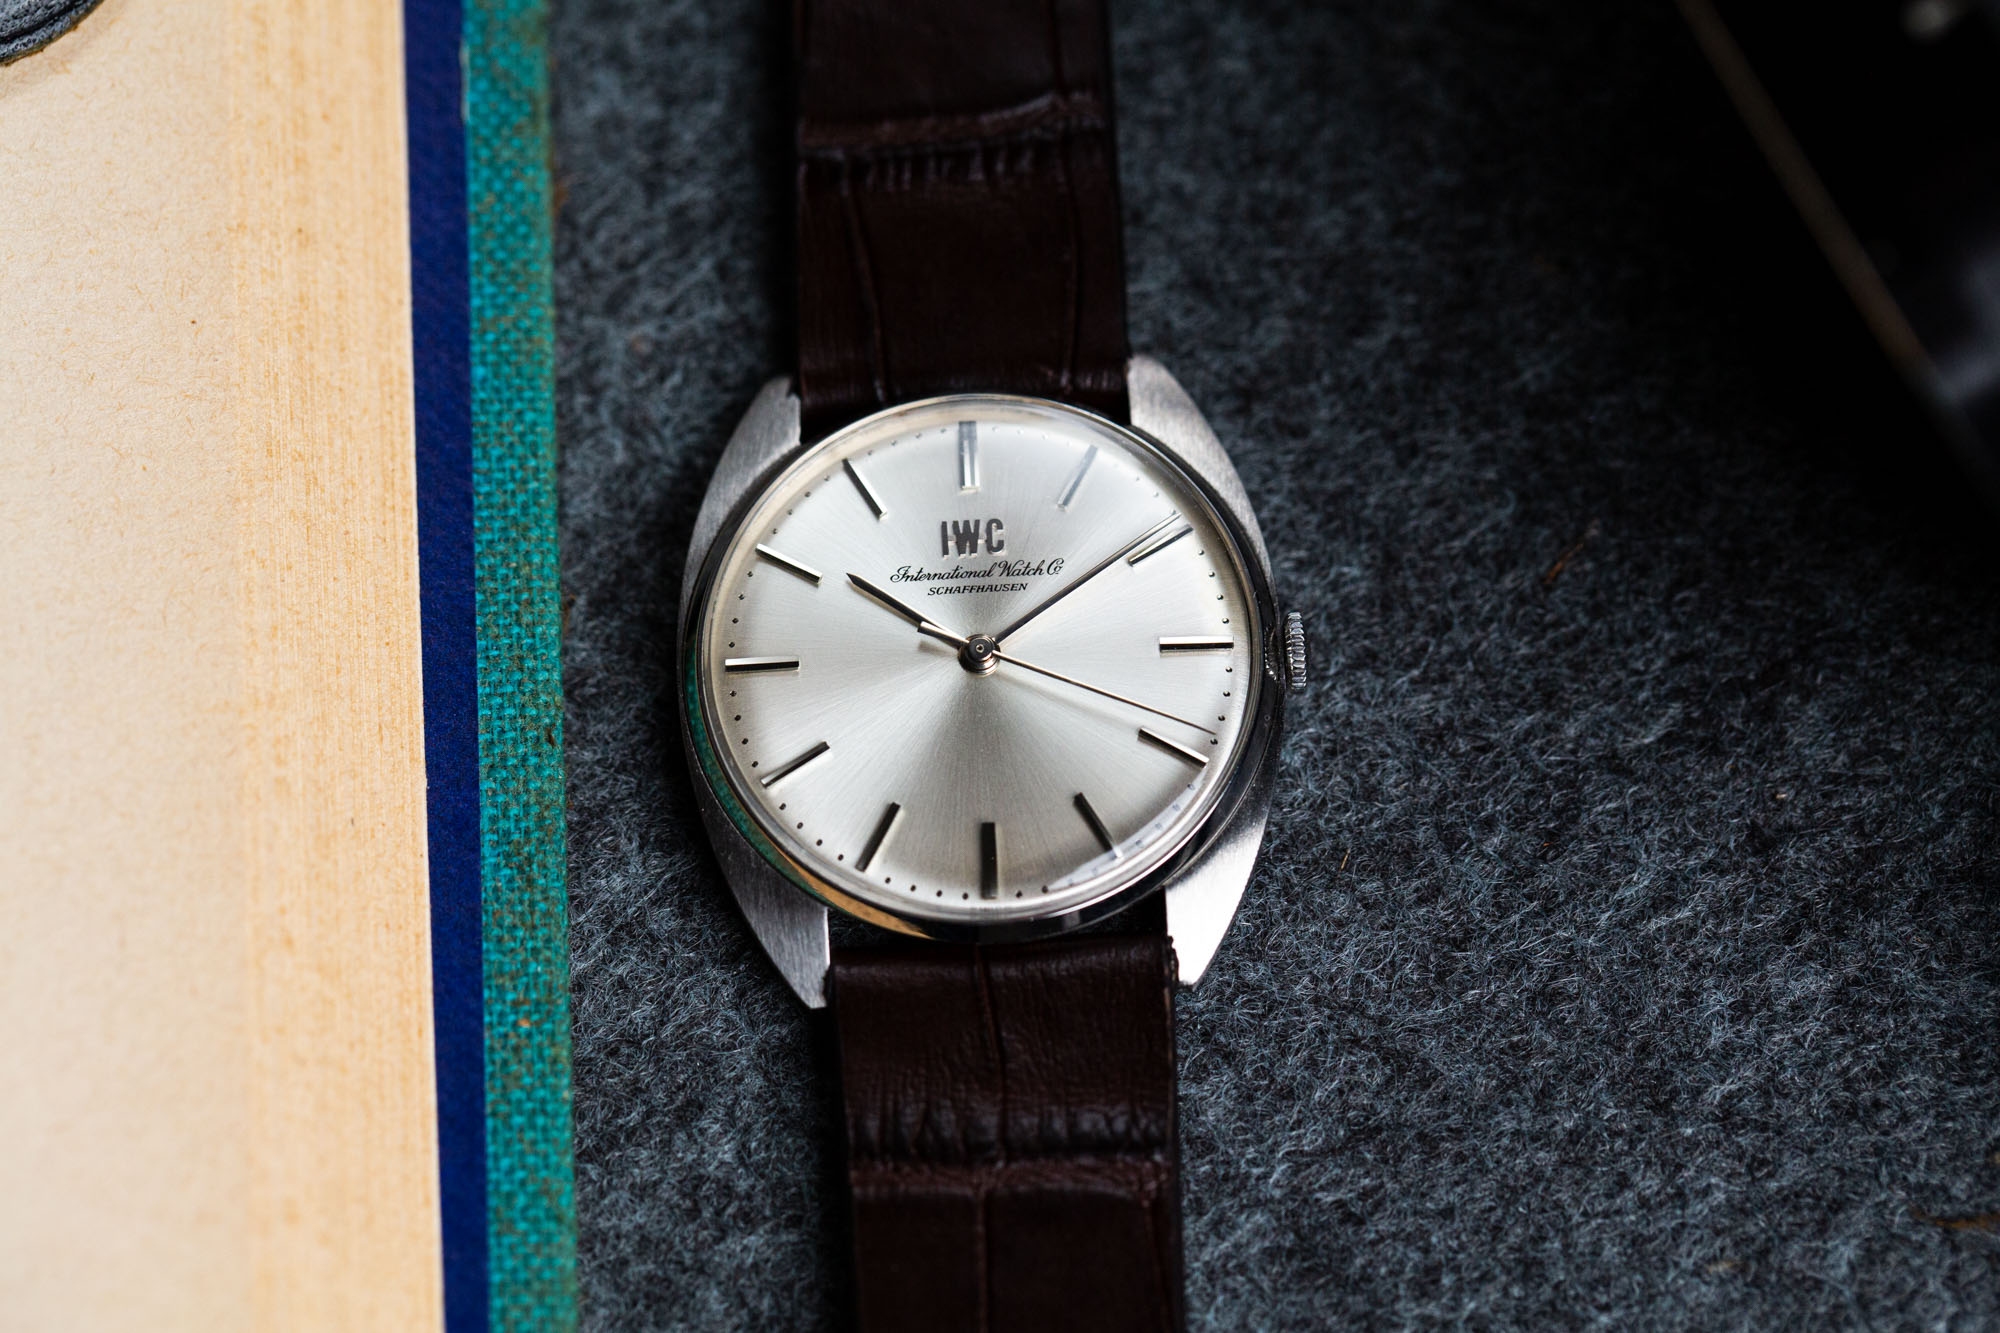 IWC mécanique - Sélection de montres vintage JOSEPH BONNIE